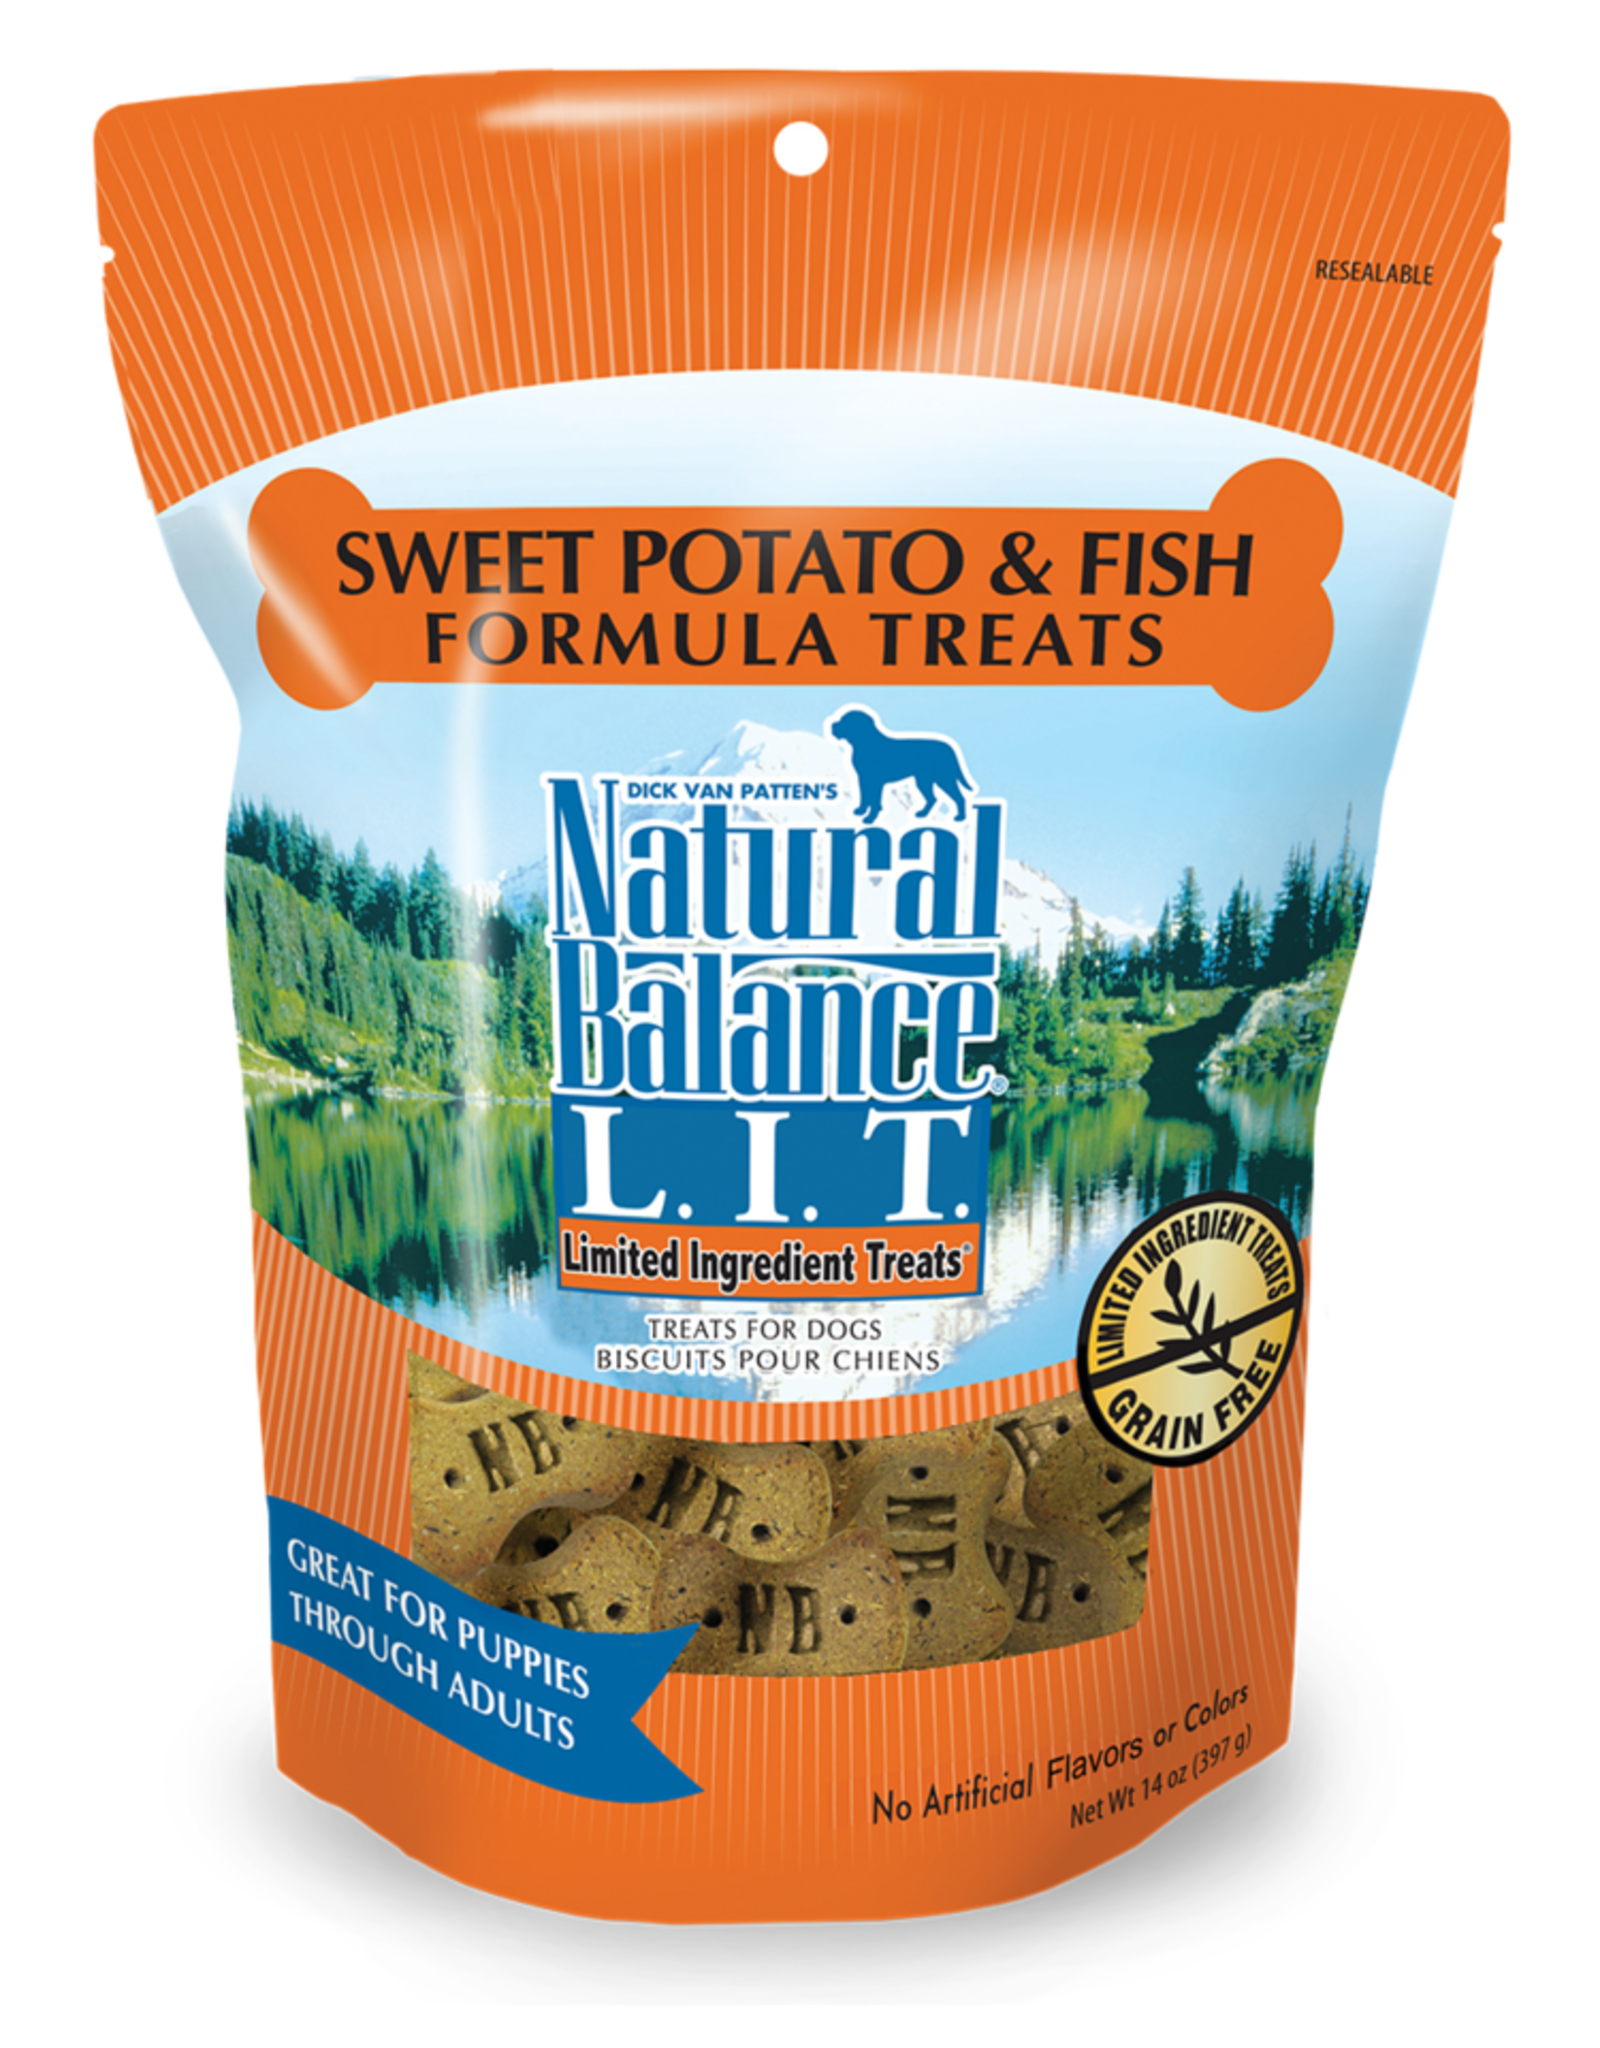 NATURAL BALANCE PET FOODS, INC NATURAL BALANCE CRUNCHY BISCUIT SWEET POTATO & FISH 14OZ